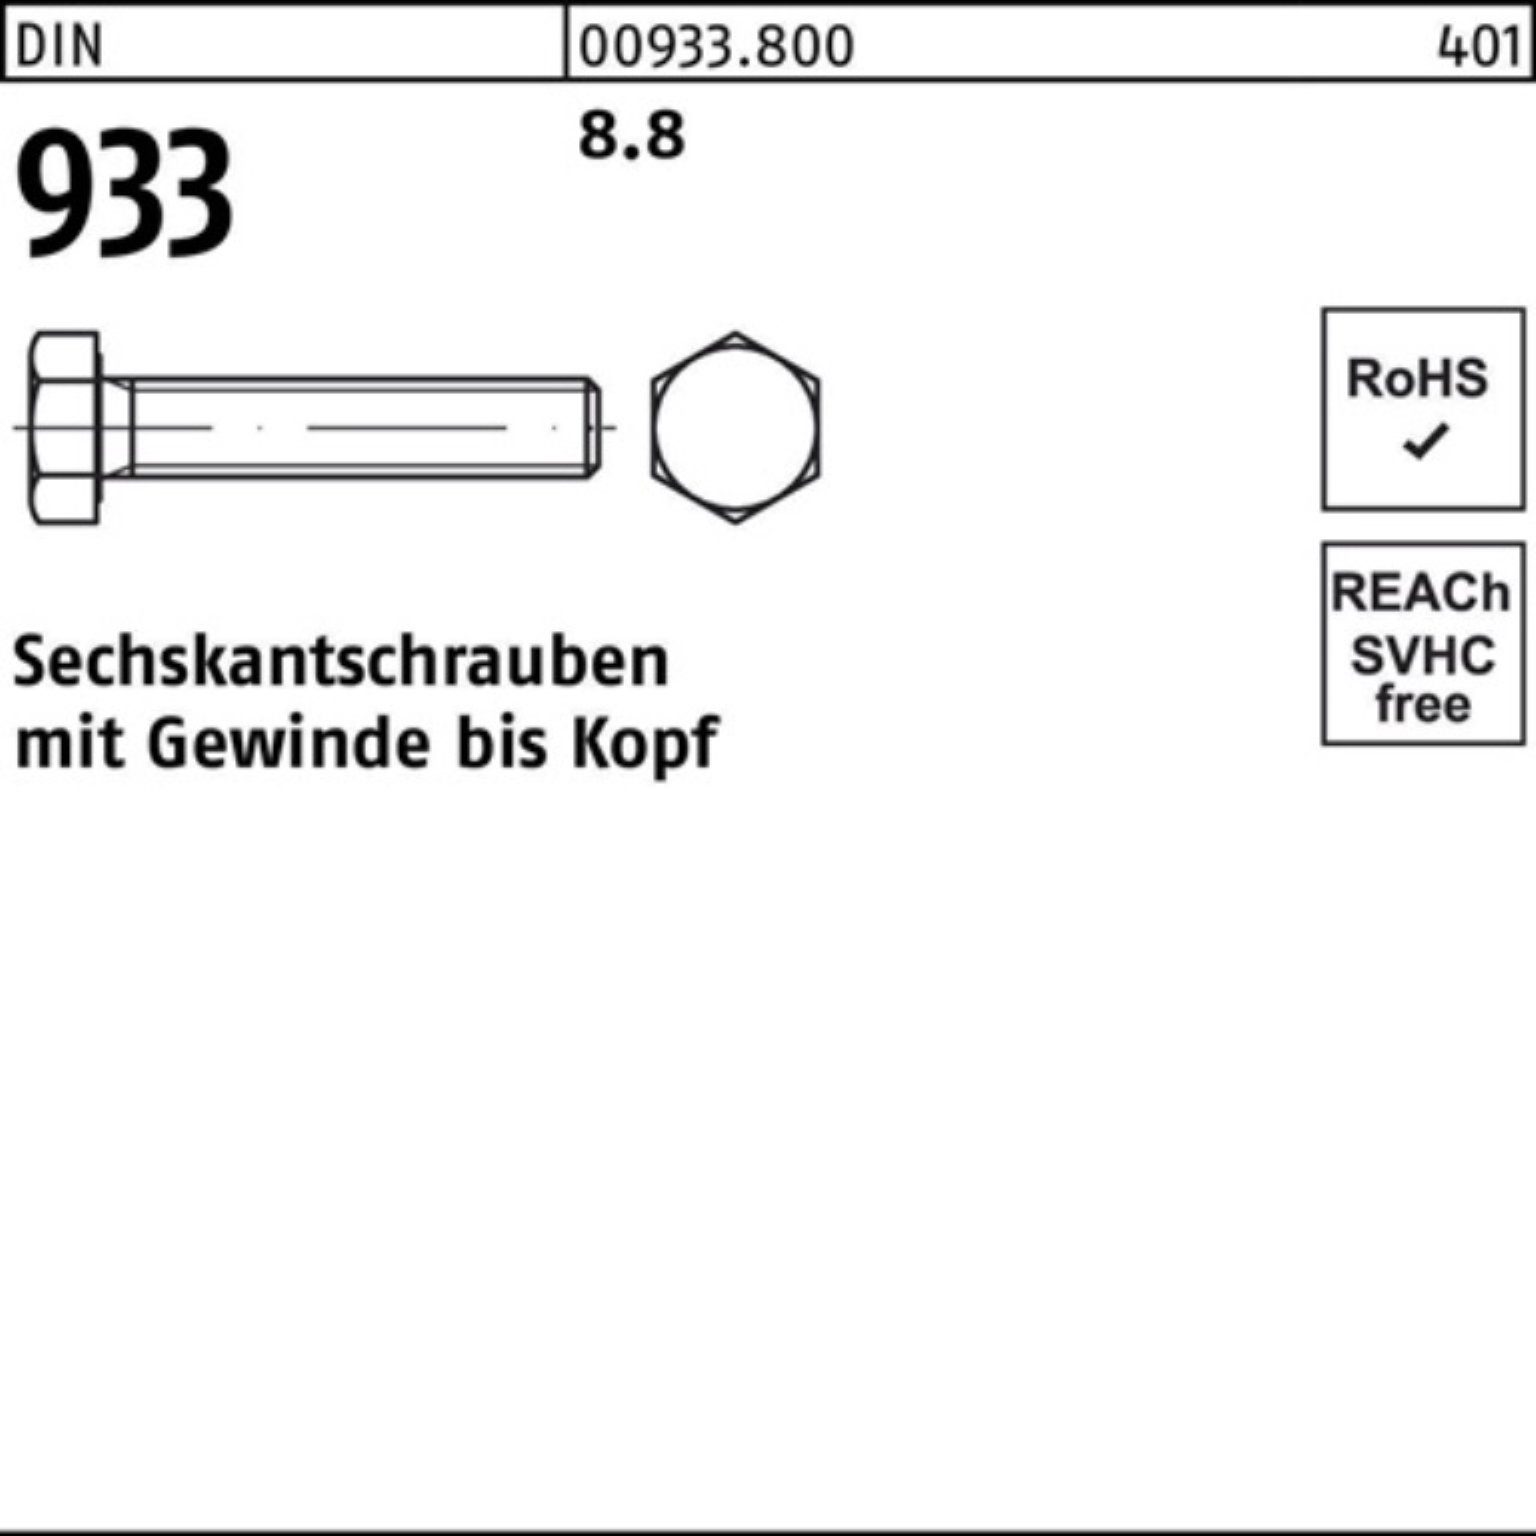 933 Sechskantschraube Stück 100er 25 100 DIN M20x 933 Pack DIN VG Reyher Sechskantschraube 8.8